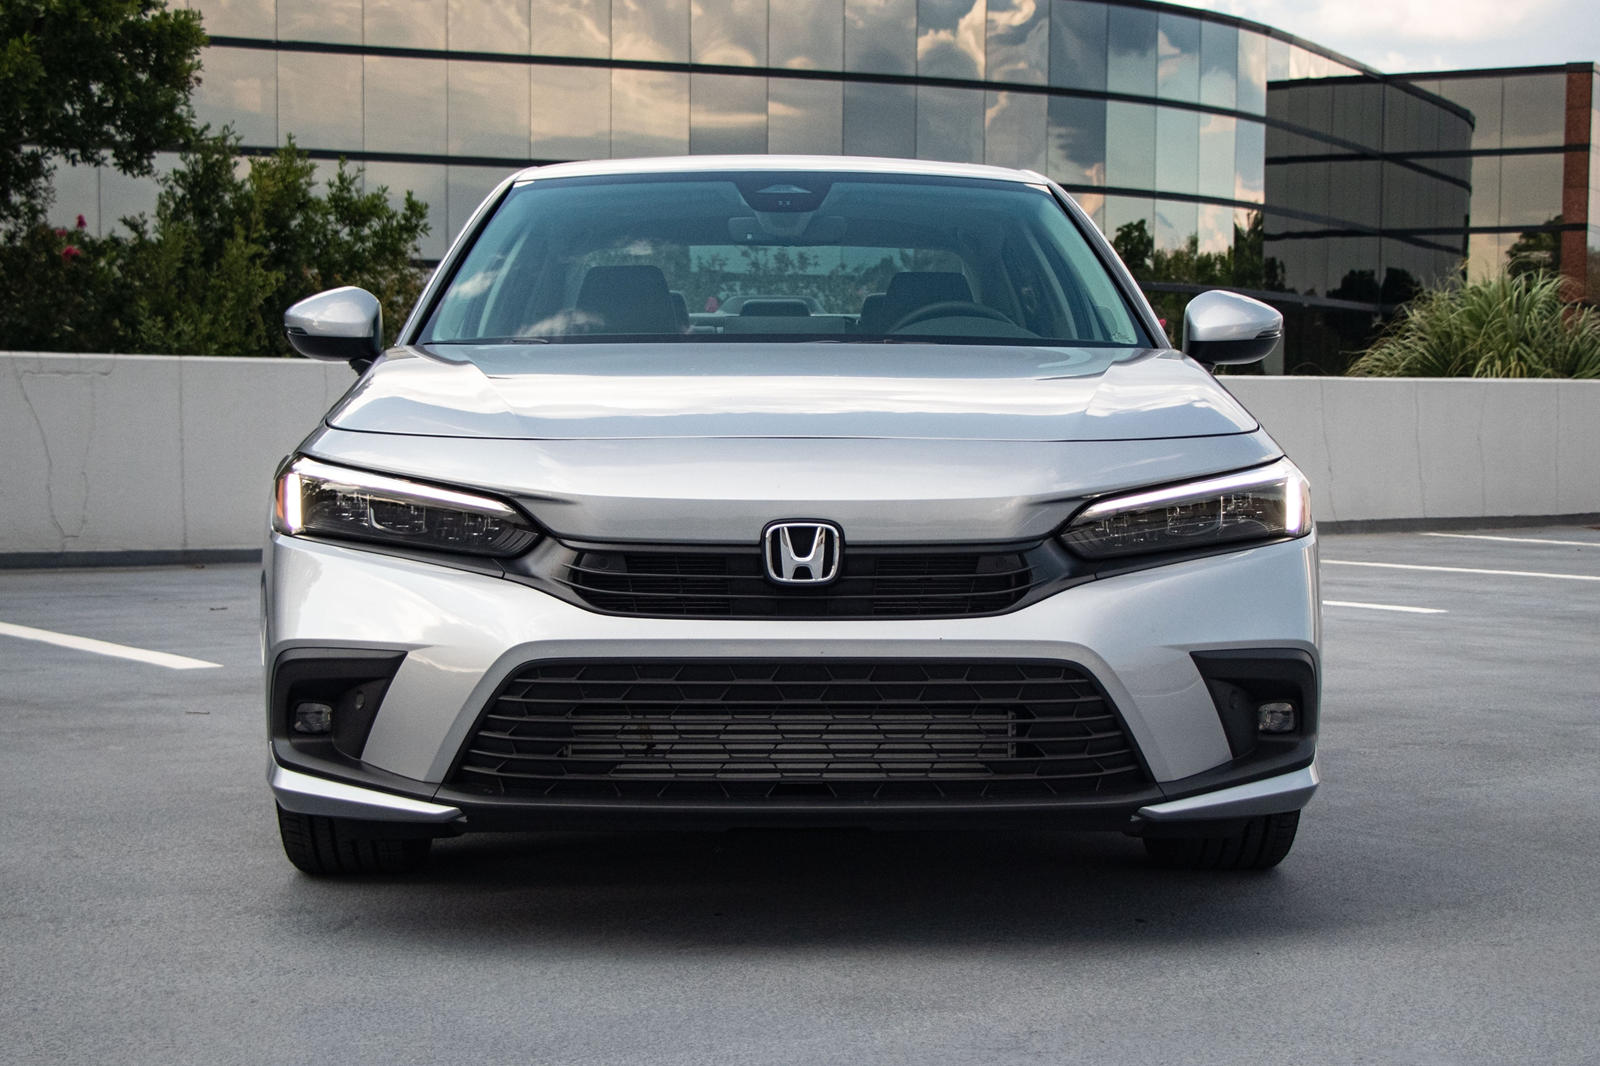 2022 Honda Civic Sedan Front View